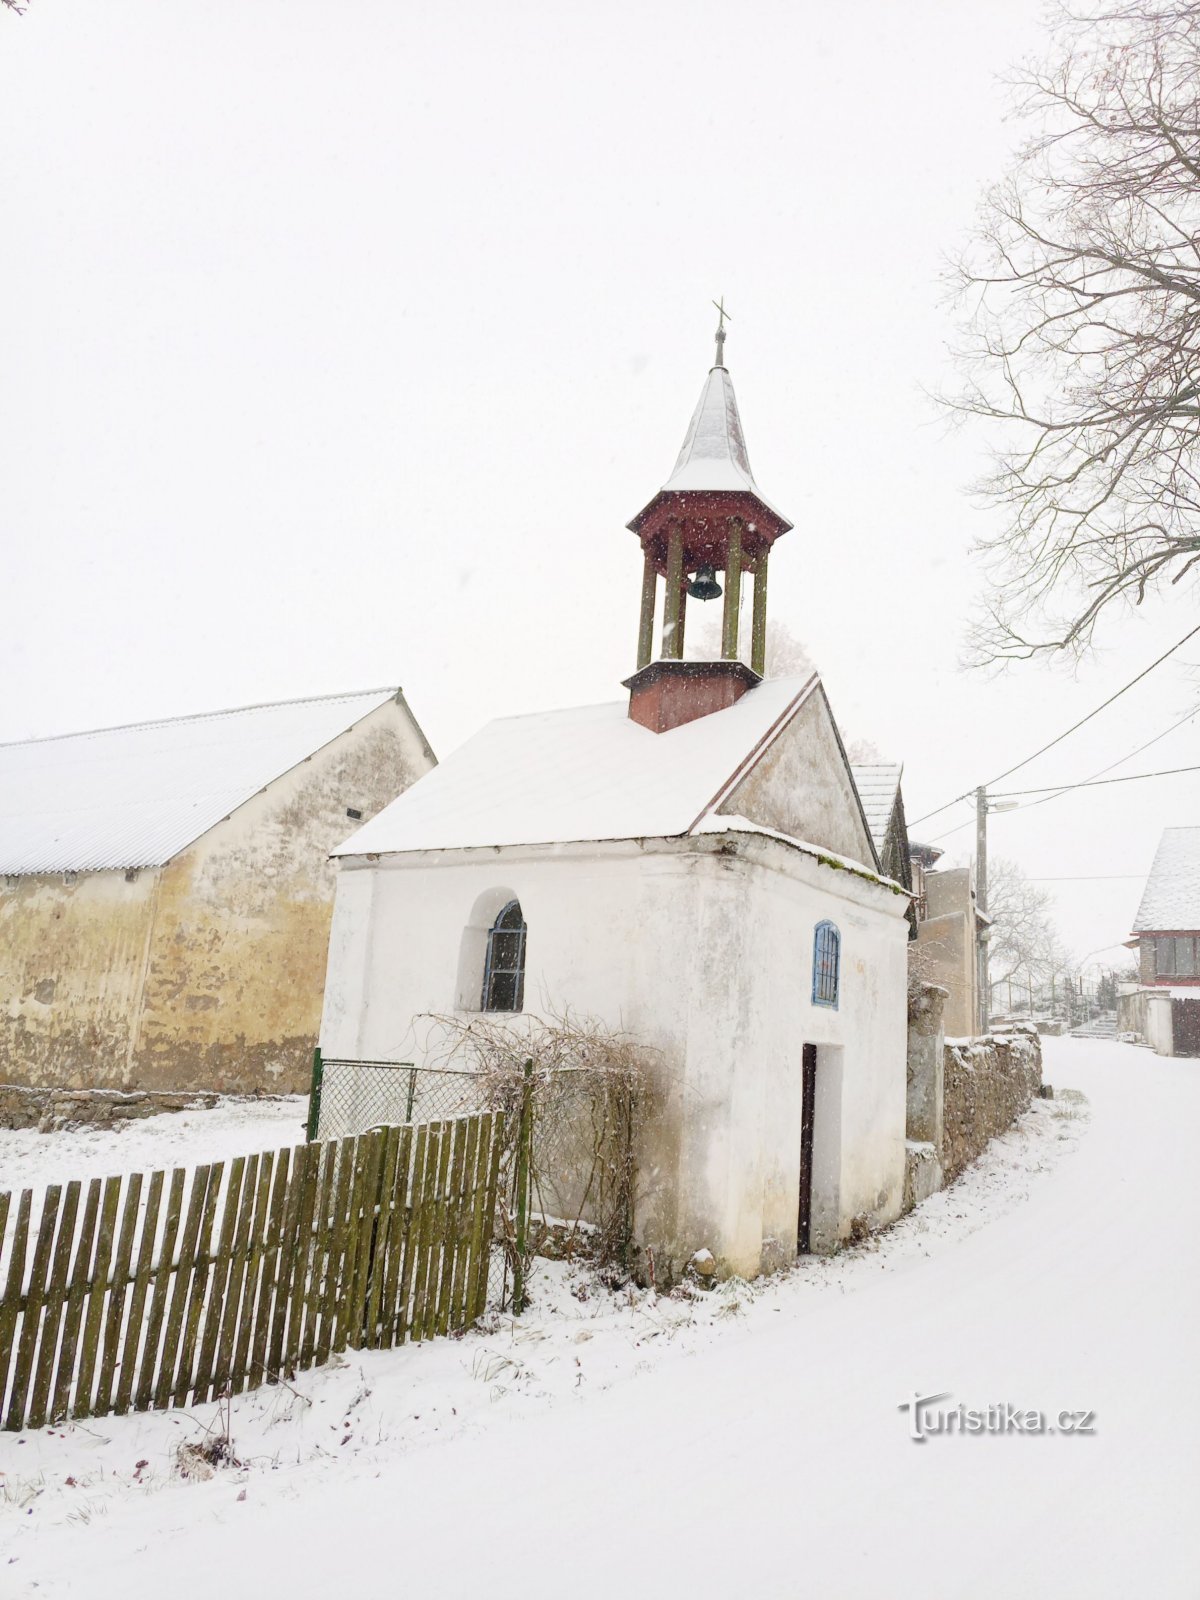 2. Chapelle avec un clocher en bois à six pans à Cunkov